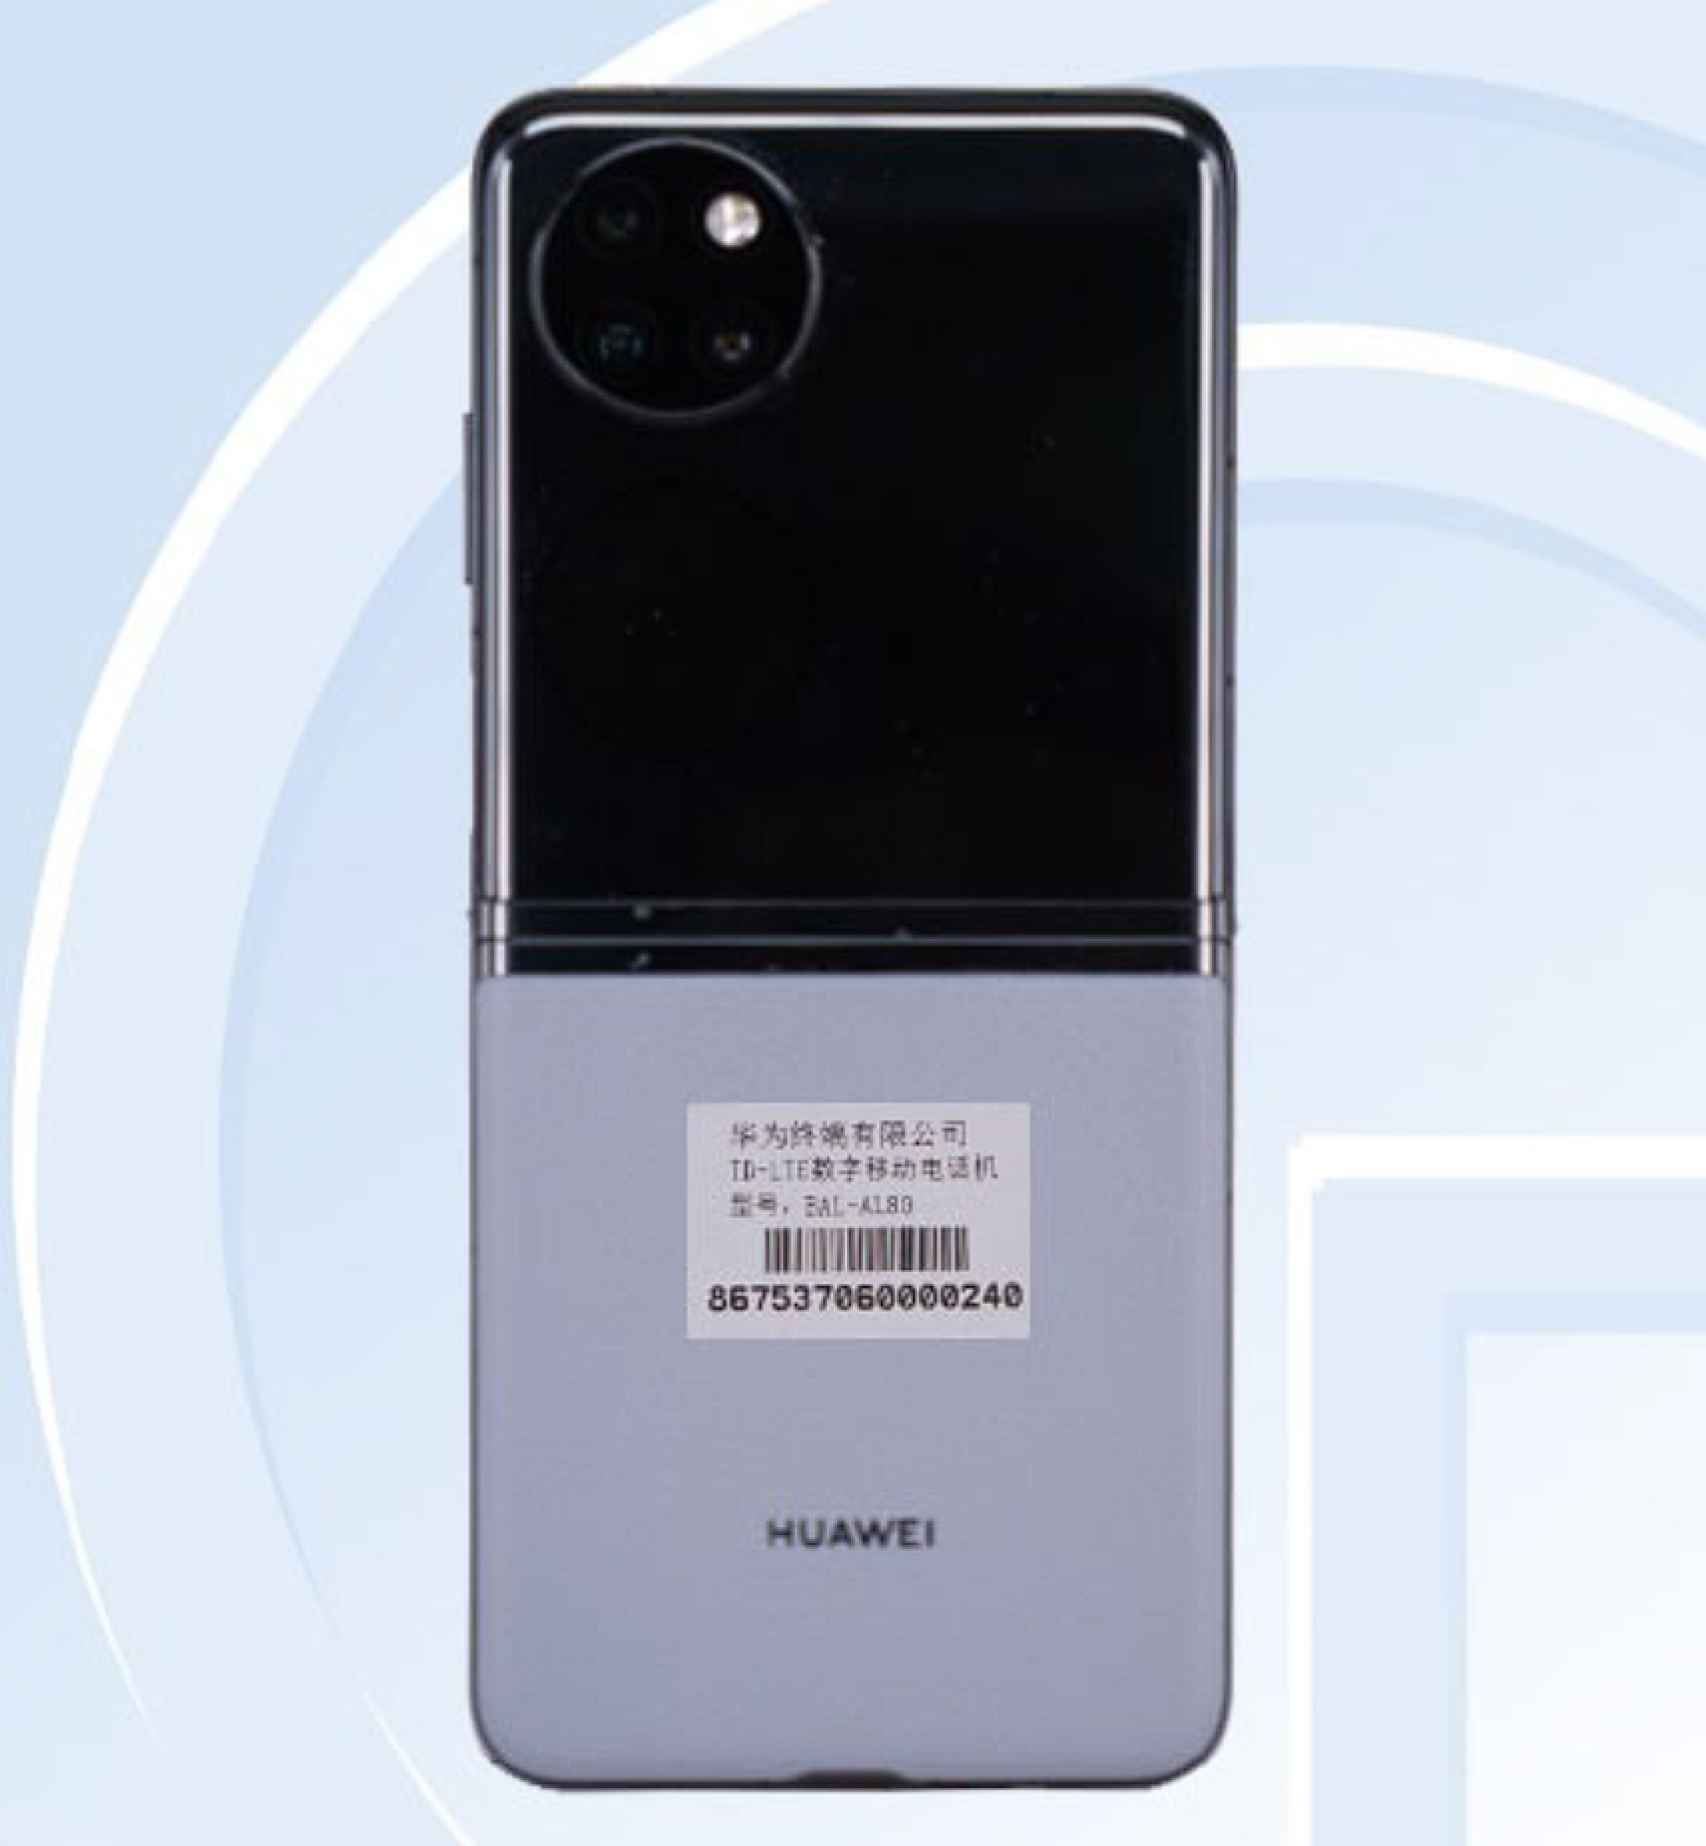 Huawei tiene la última tendencia tecnológica: los móviles de concha